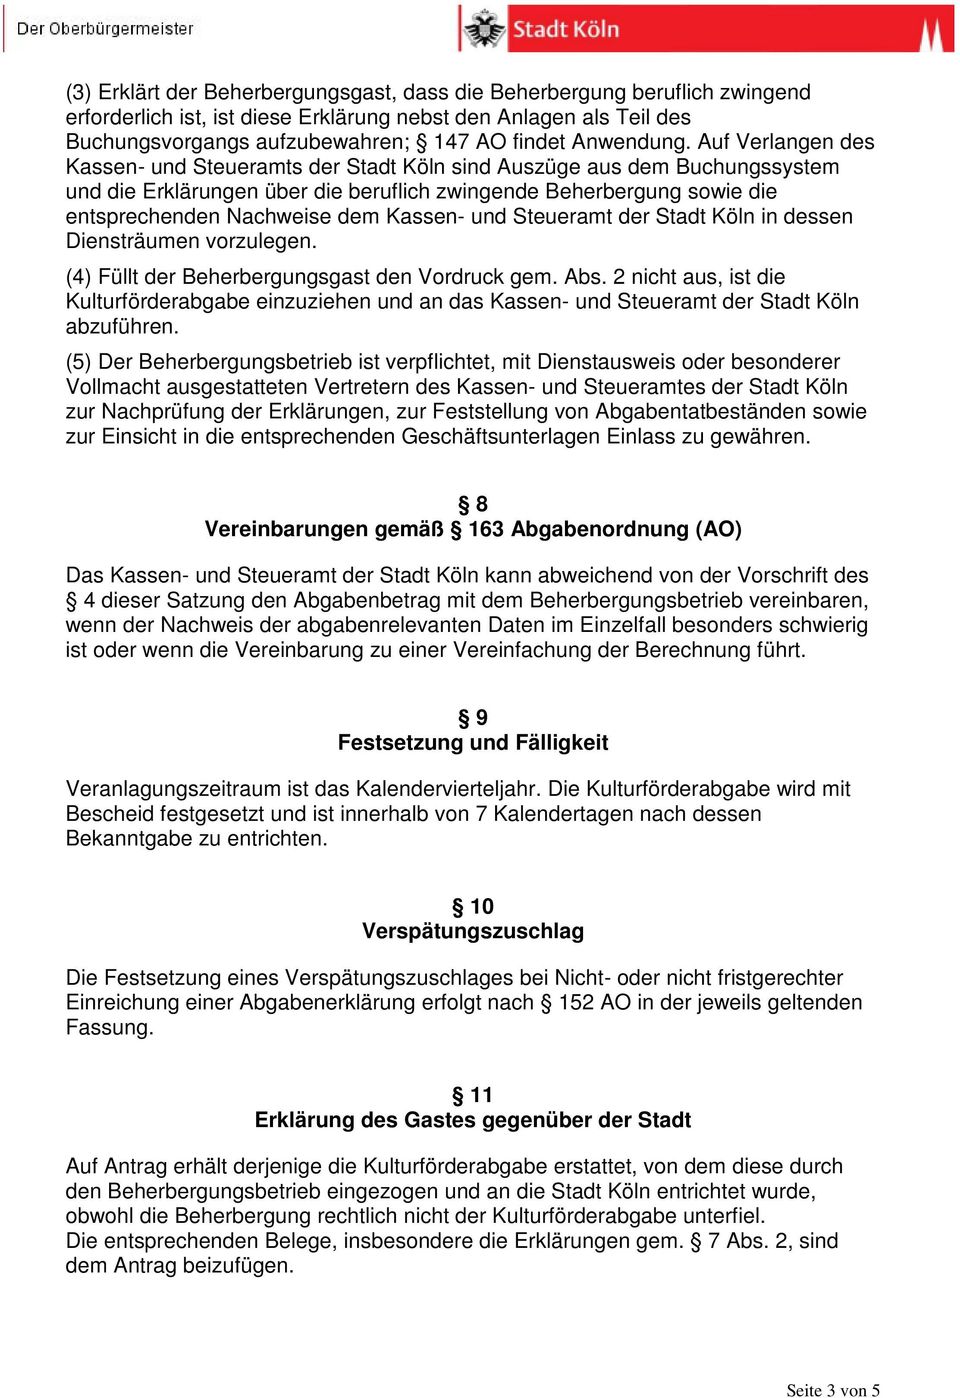 Auf Verlangen des Kassen- und Steueramts der Stadt Köln sind Auszüge aus dem Buchungssystem und die Erklärungen über die beruflich zwingende Beherbergung sowie die entsprechenden Nachweise dem